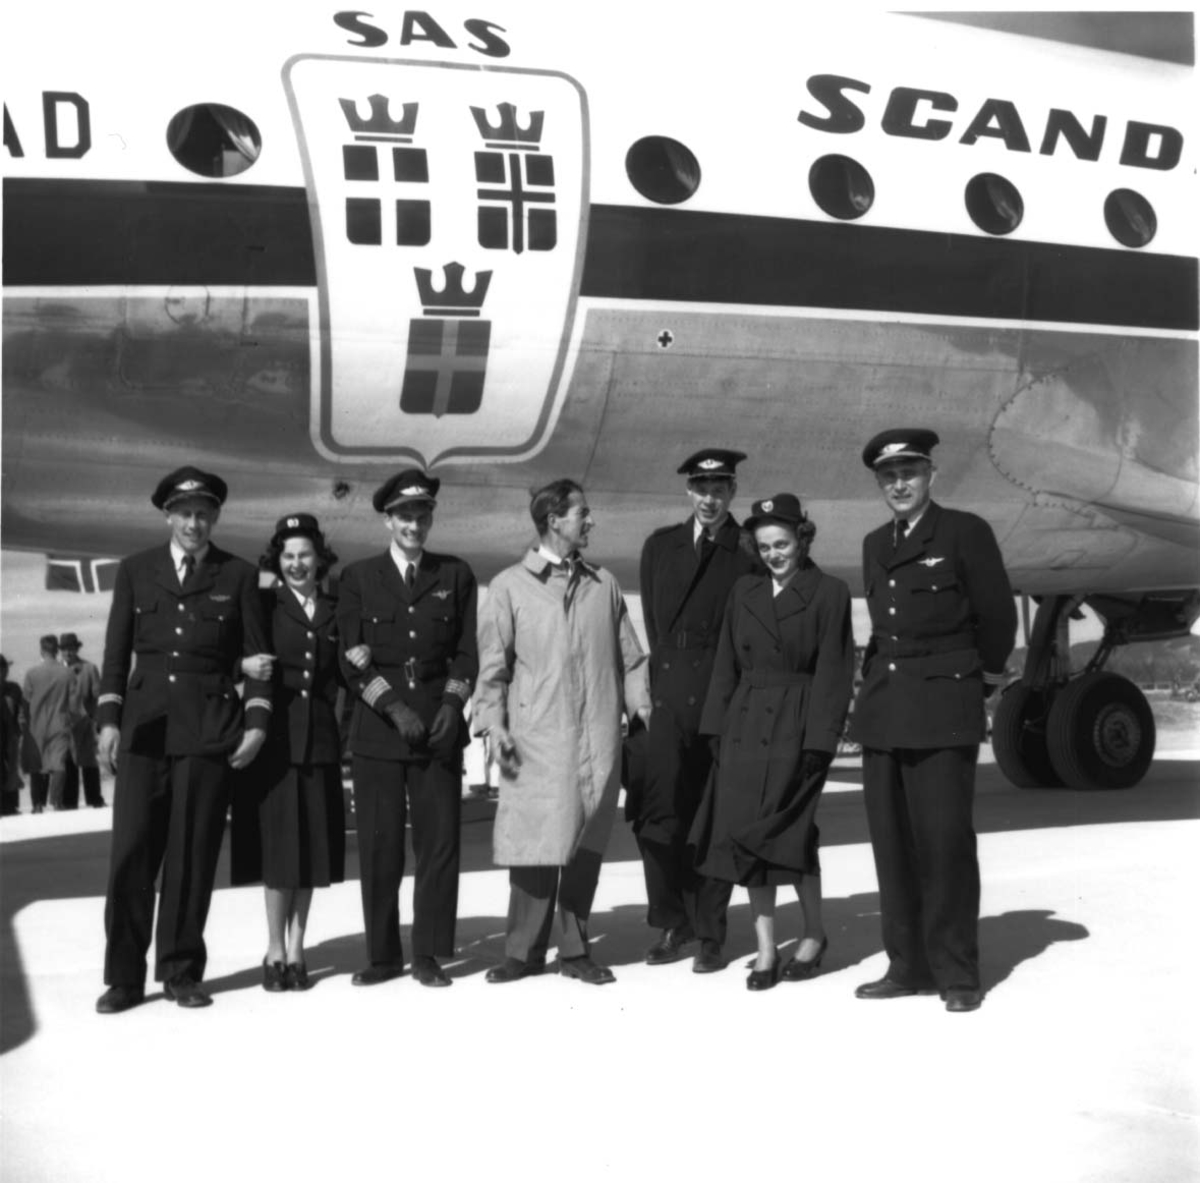 Lufthavn, flere personer oppstilt foran ett fly, DC-4 Skymaster LN-IAD fra SAS. Flypersonell i uniformer og en person i "vanlige" klær.